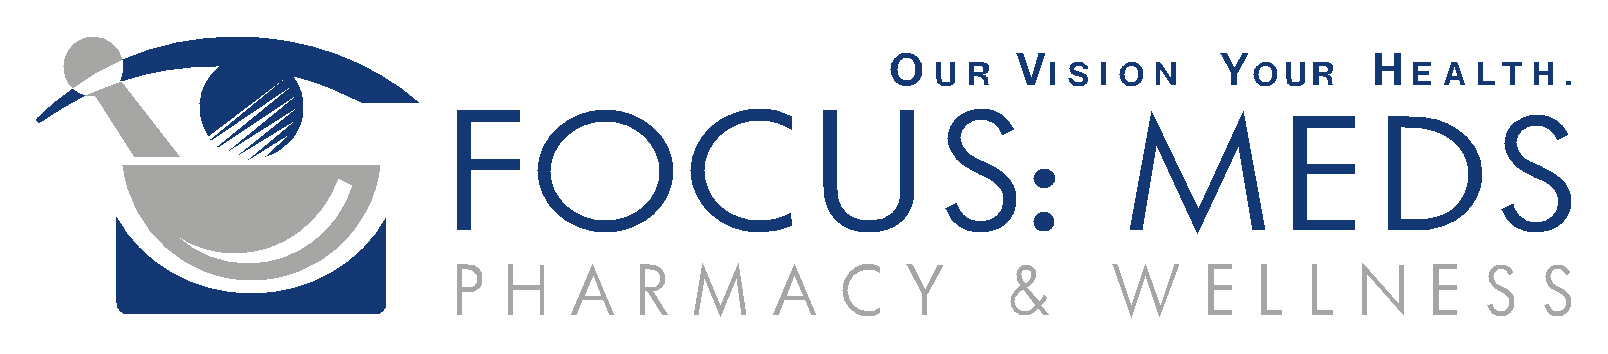 Focus Meds Pharmacy & Wellness